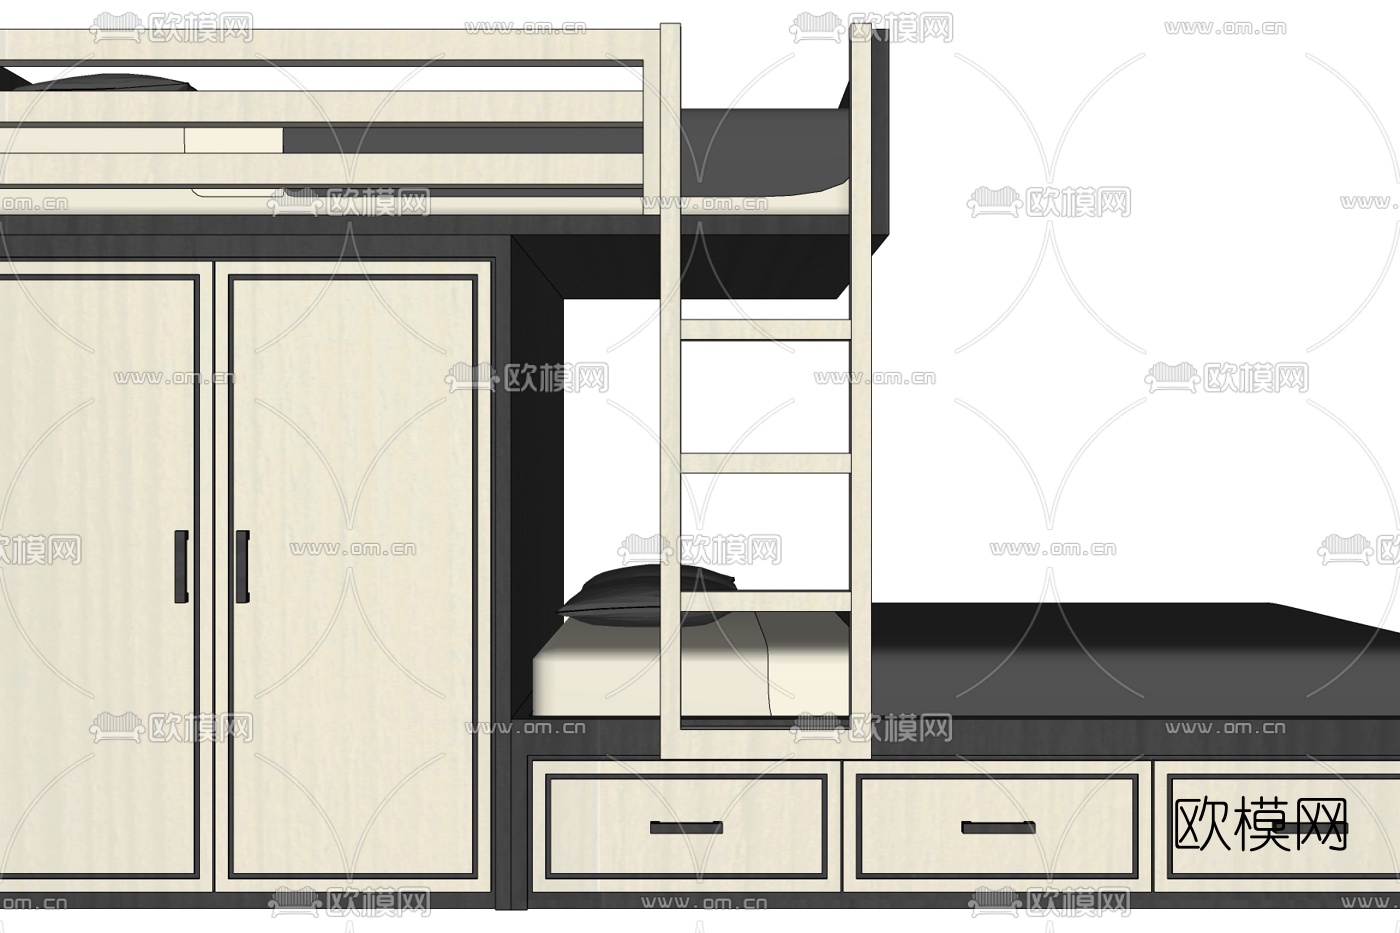 【小房间高低床装修效果图】小户型卧室上下双层床摆放效果图 - 装修公司